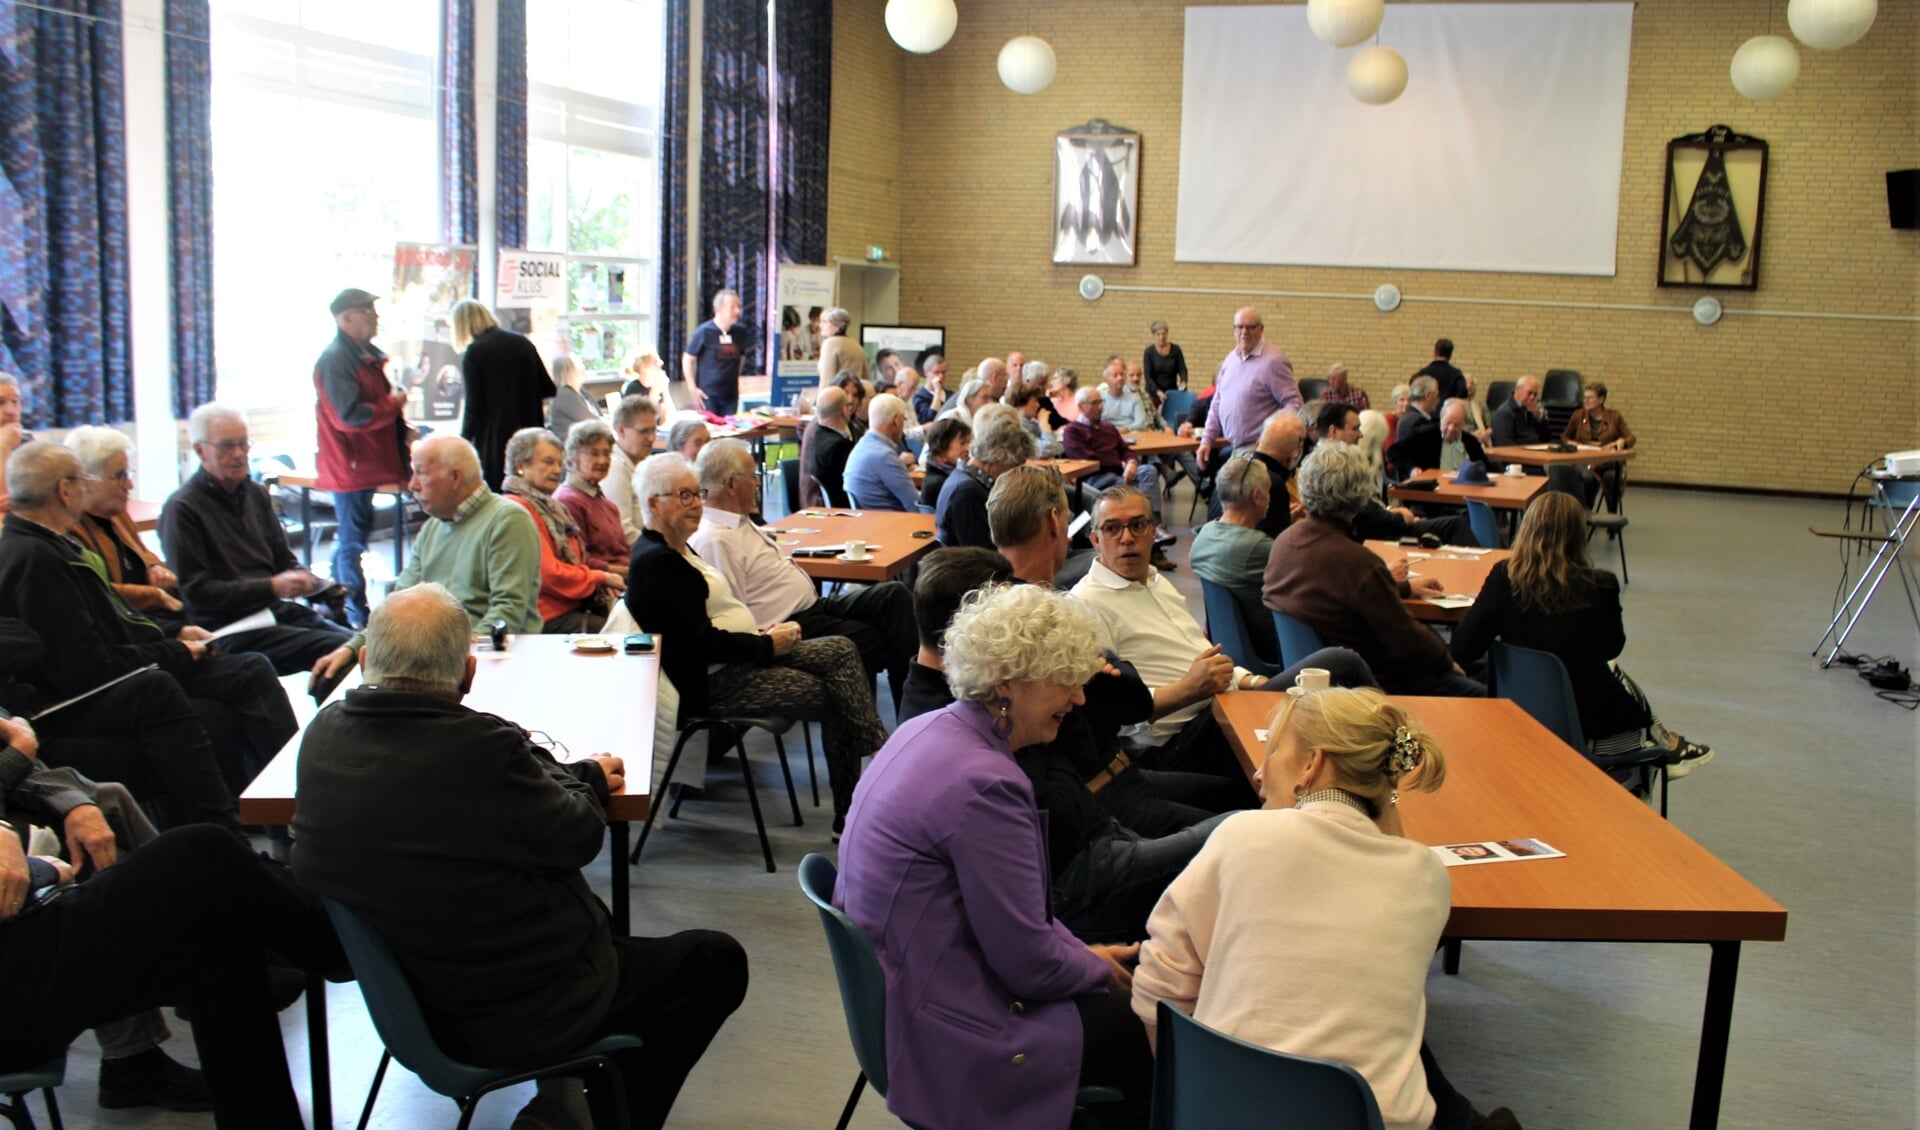 De bijeenkomst van Dorpsraad Wouw in De Geerhoek werd druk bezocht.